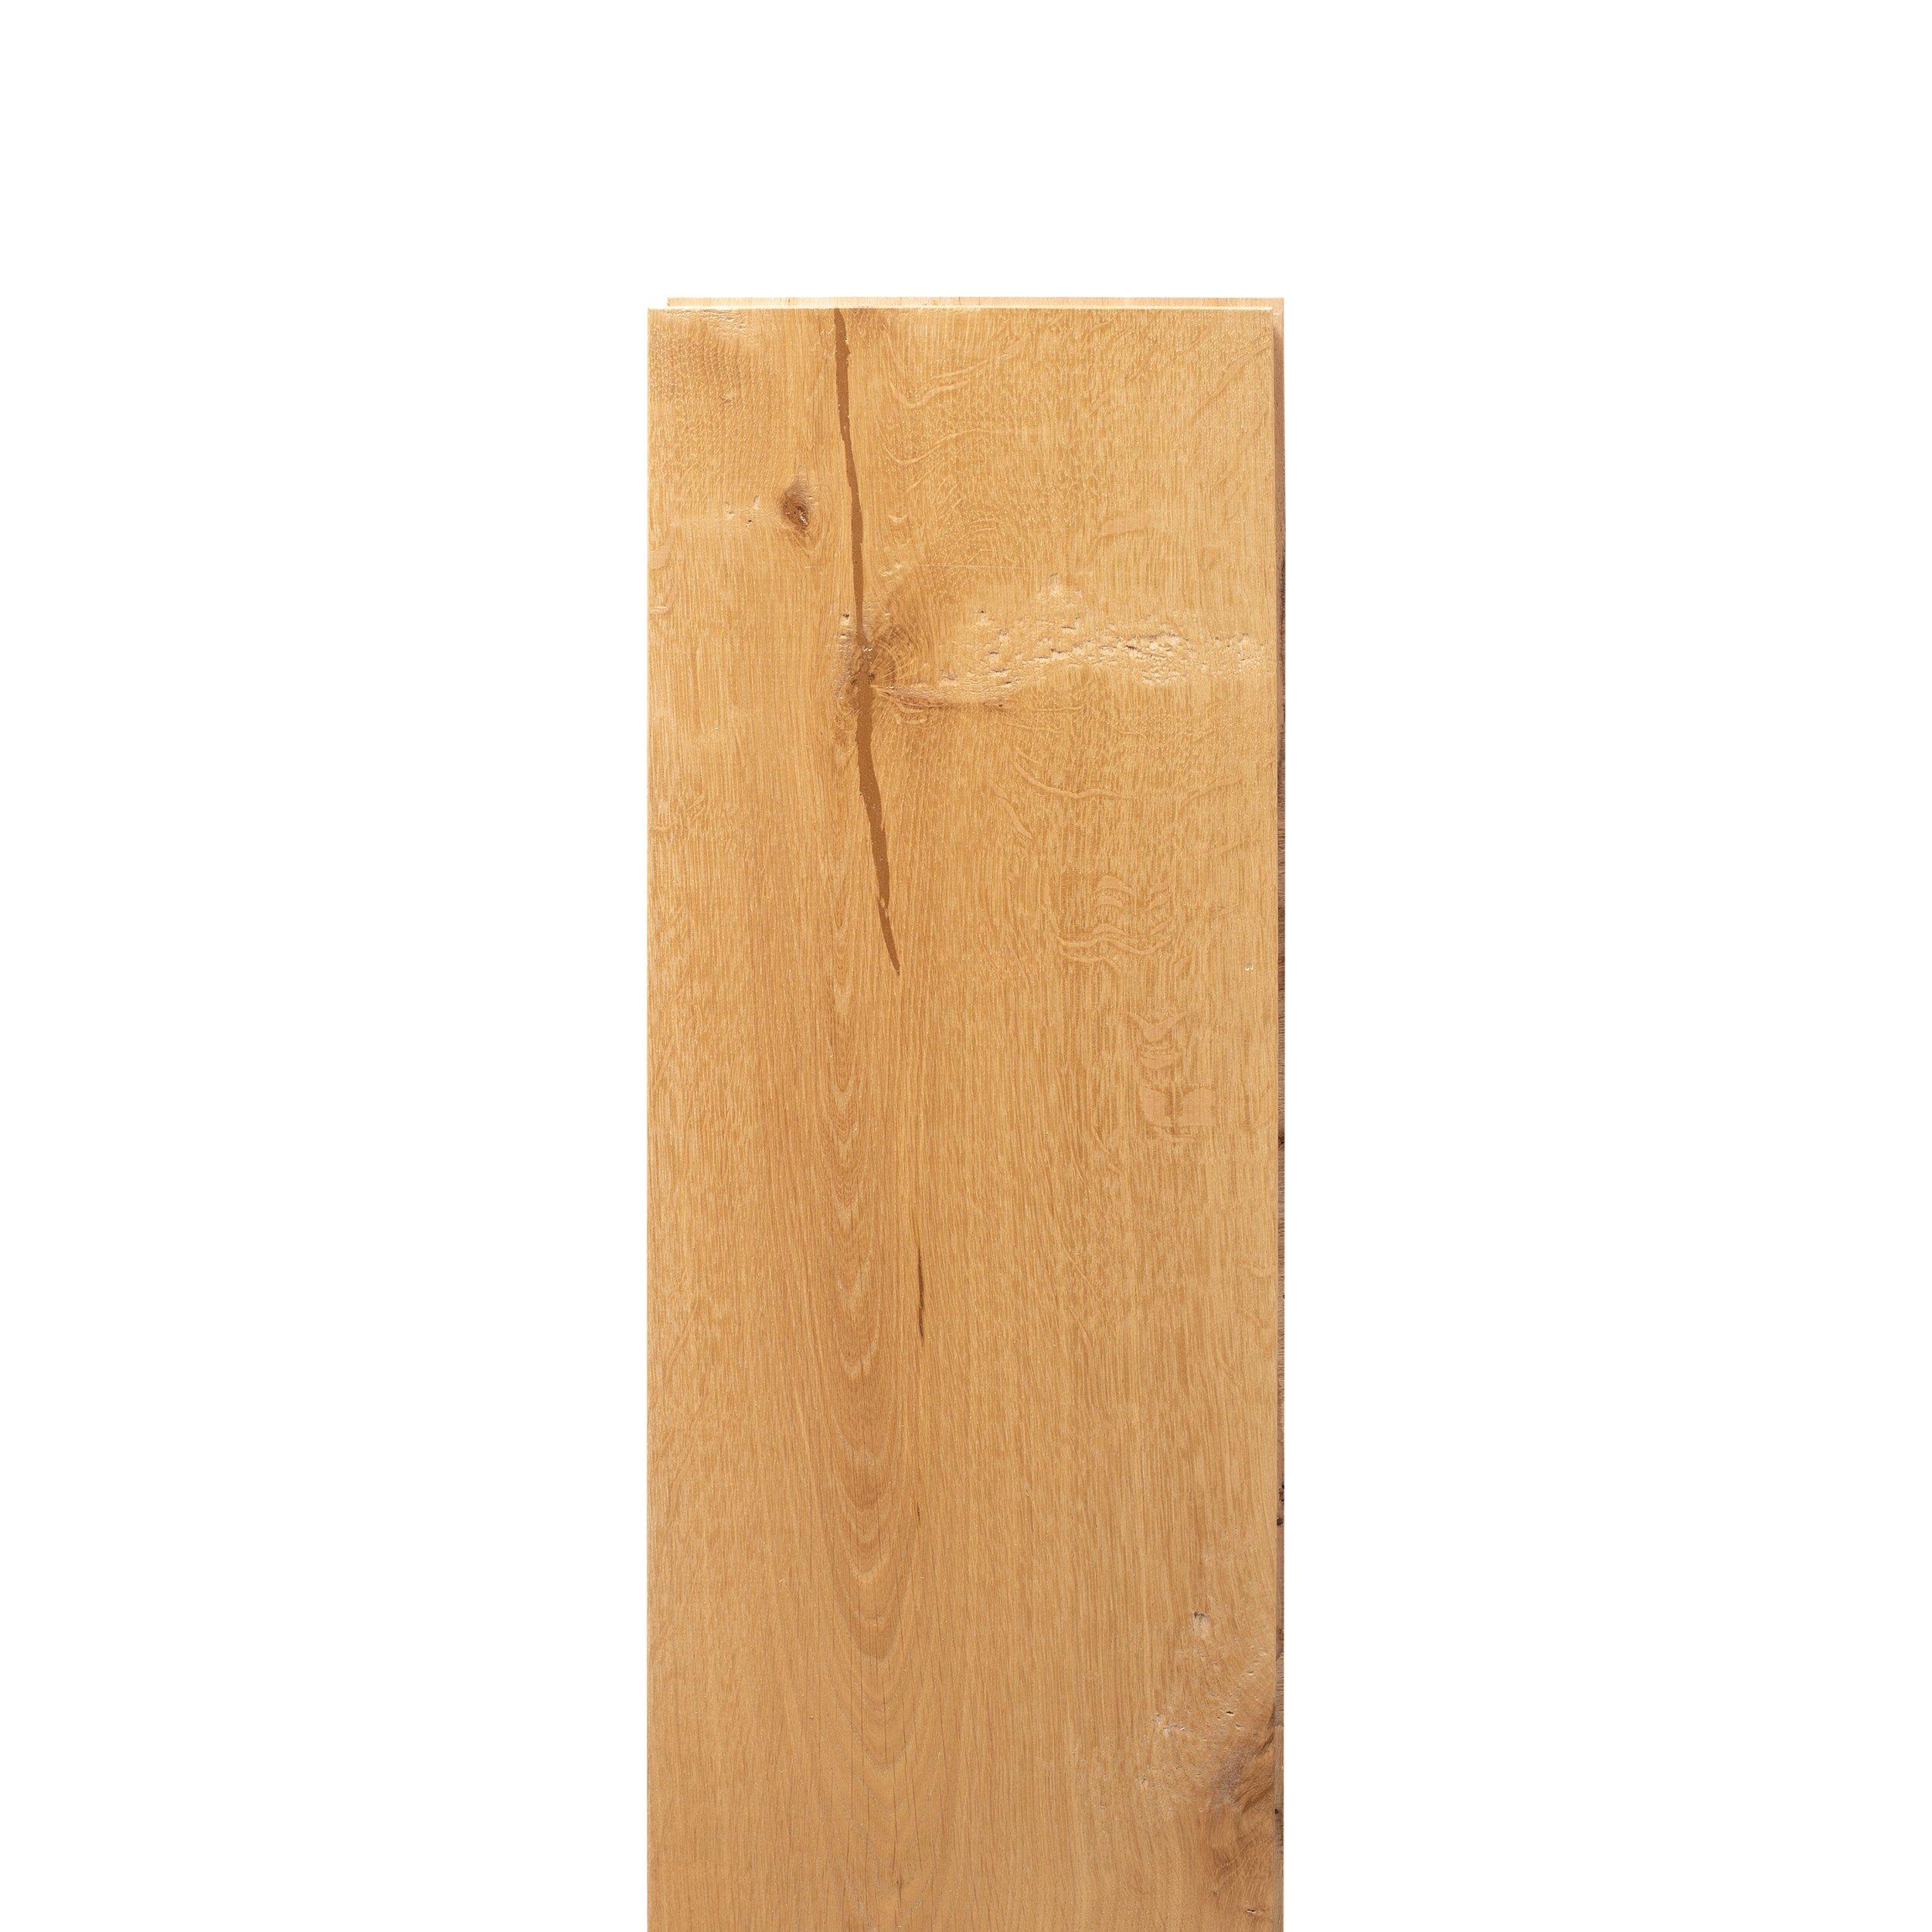 Pearson White Oak Distressed Engineered Hardwood